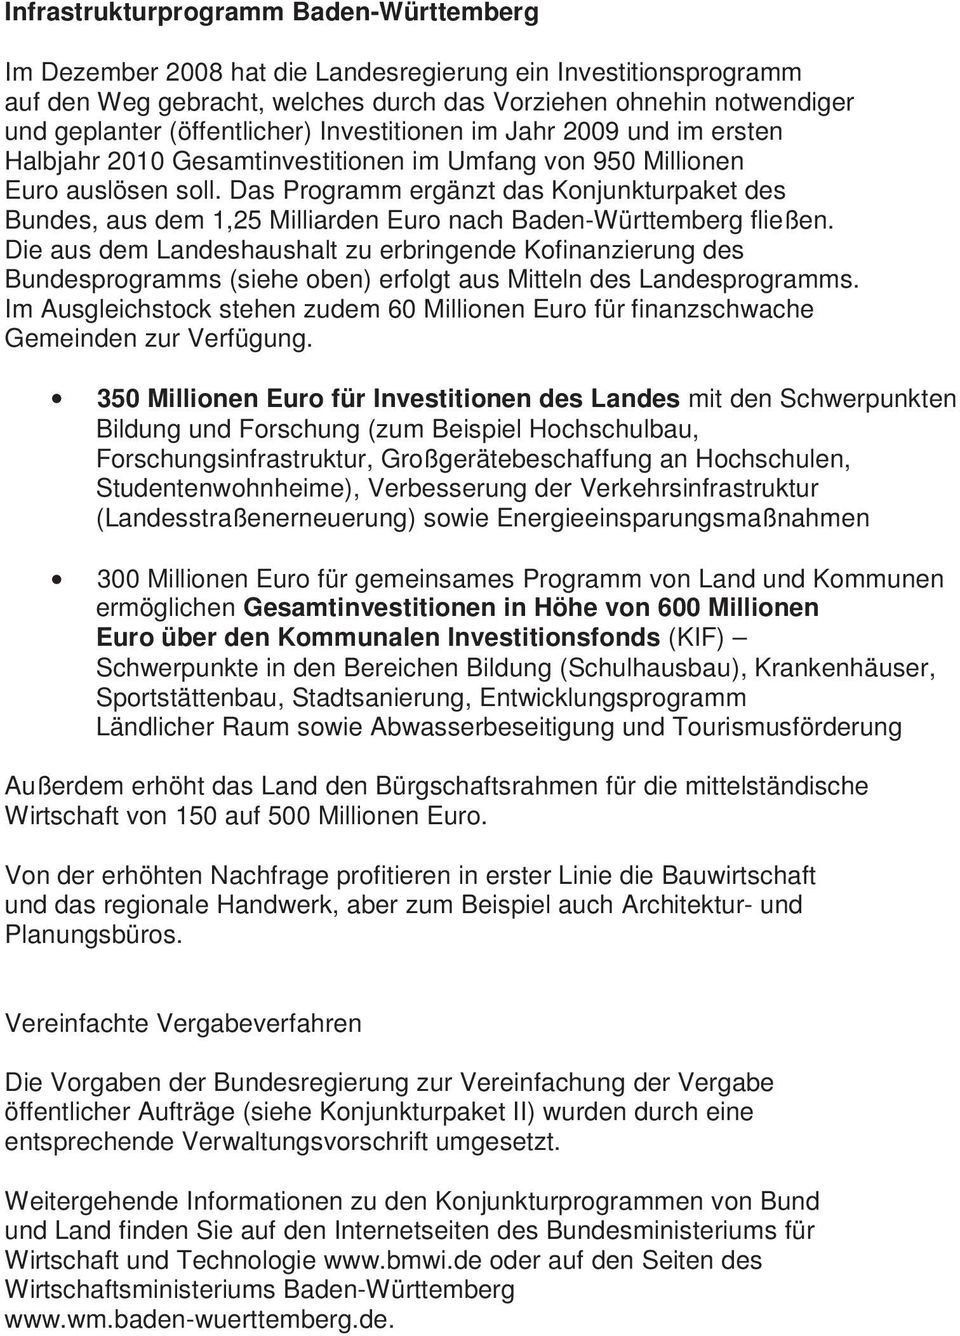 Das Programm ergänzt das Konjunkturpaket des Bundes, aus dem 1,25 Milliarden Euro nach Baden-Württemberg fließen.